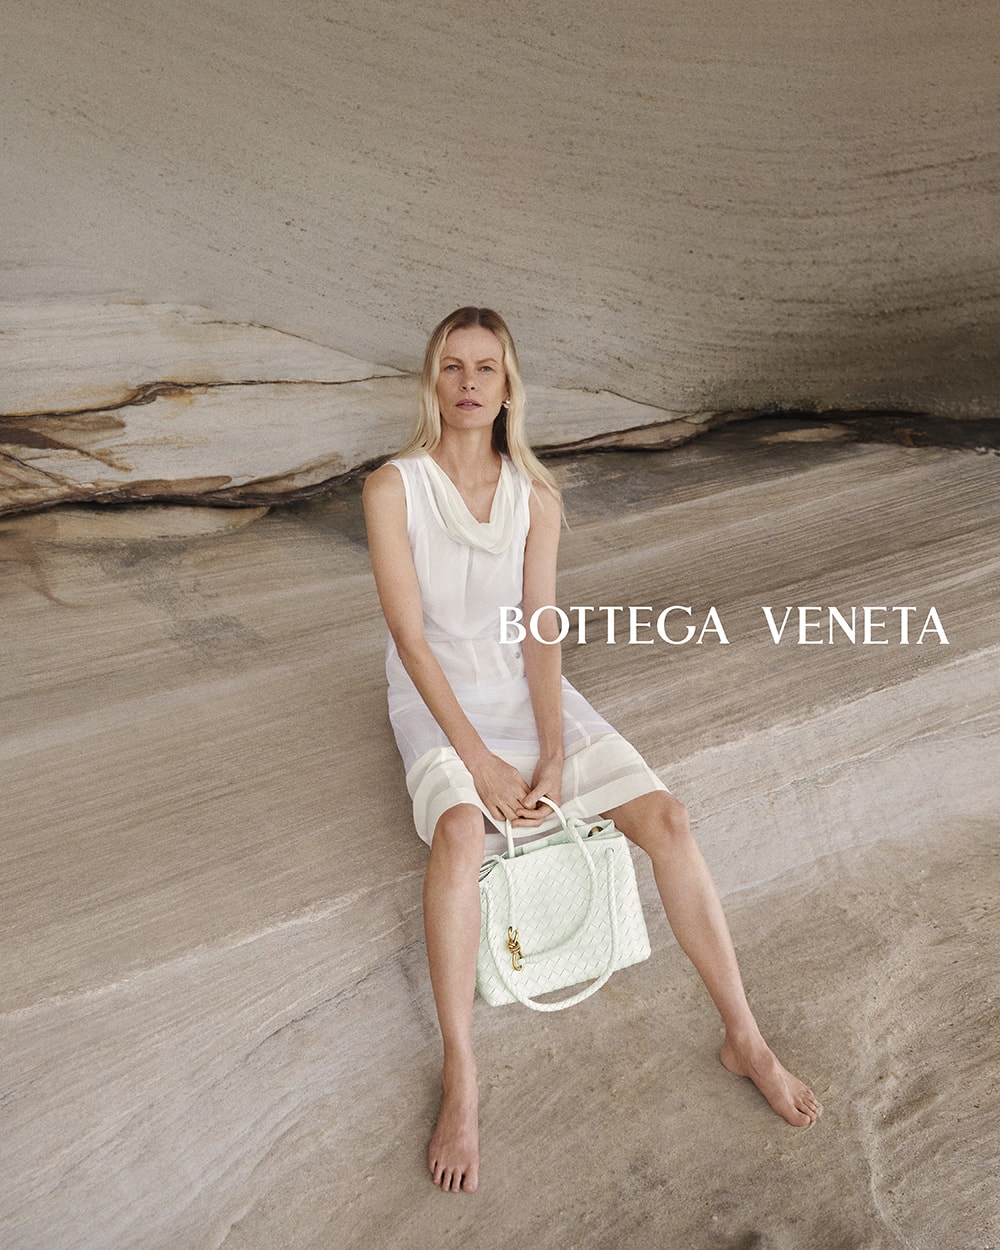 Bottega Veneta 正式推出全新 Andiamo 手袋系列